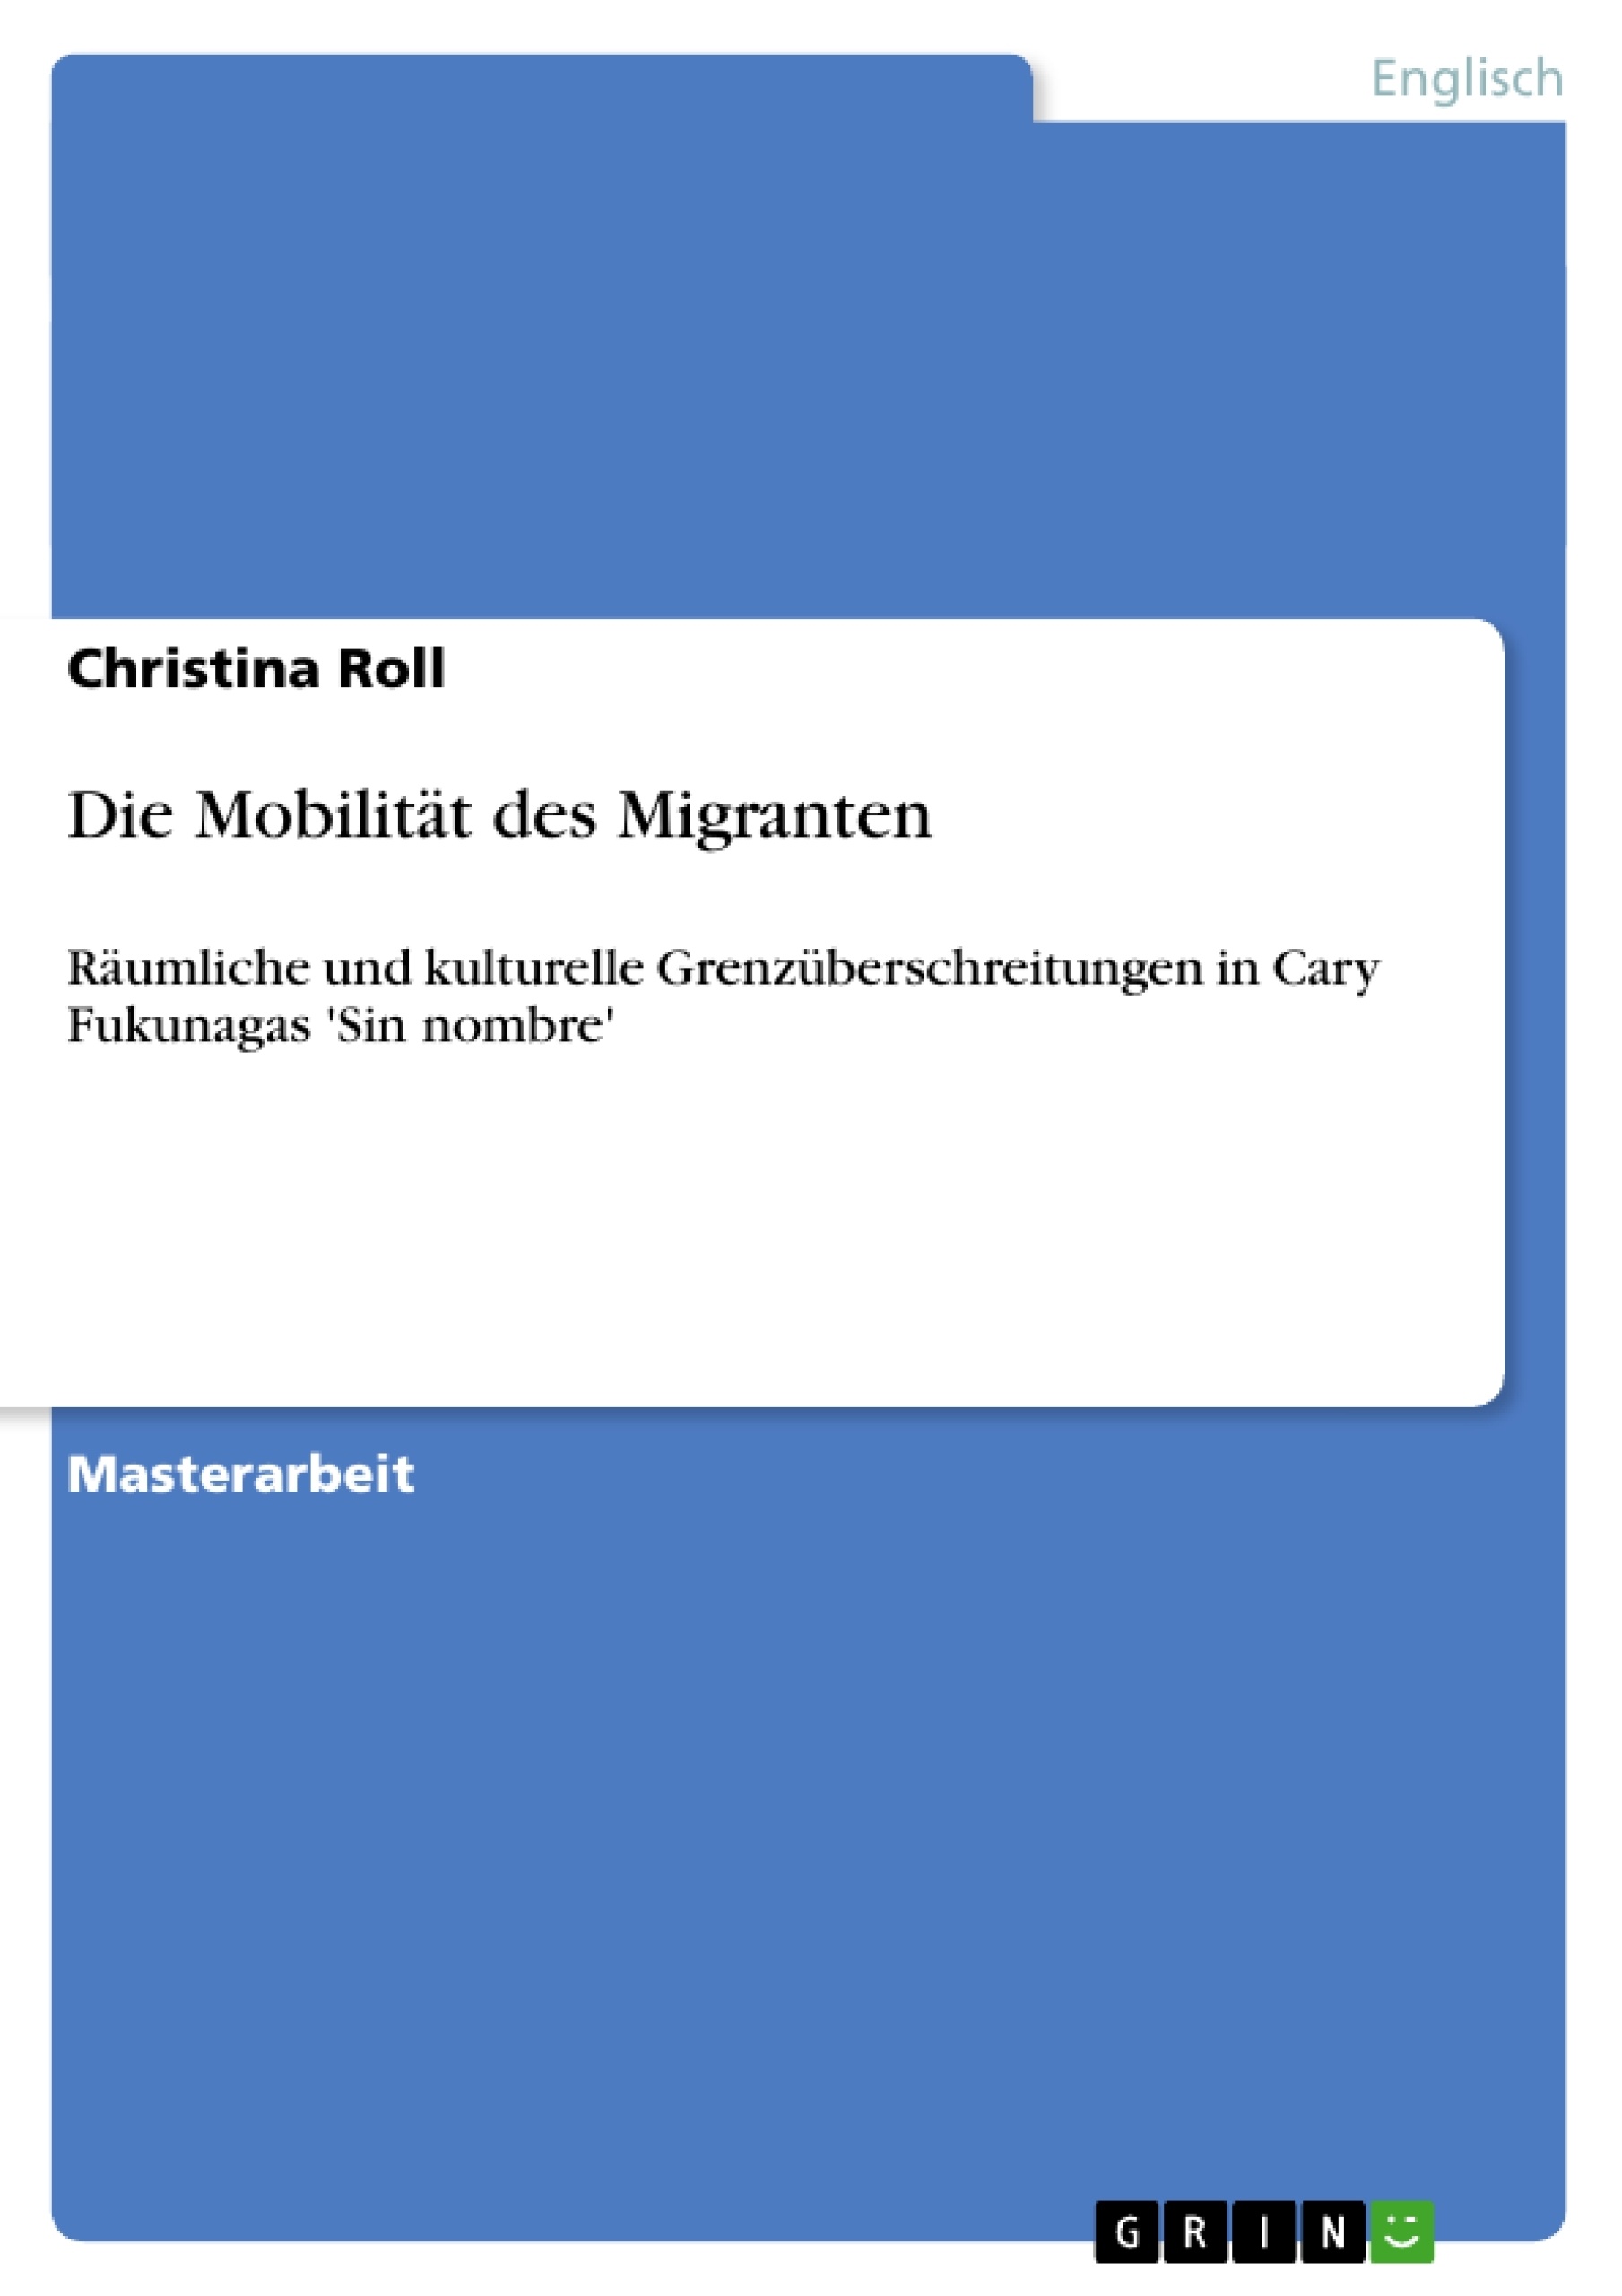 Title: Die Mobilität des Migranten